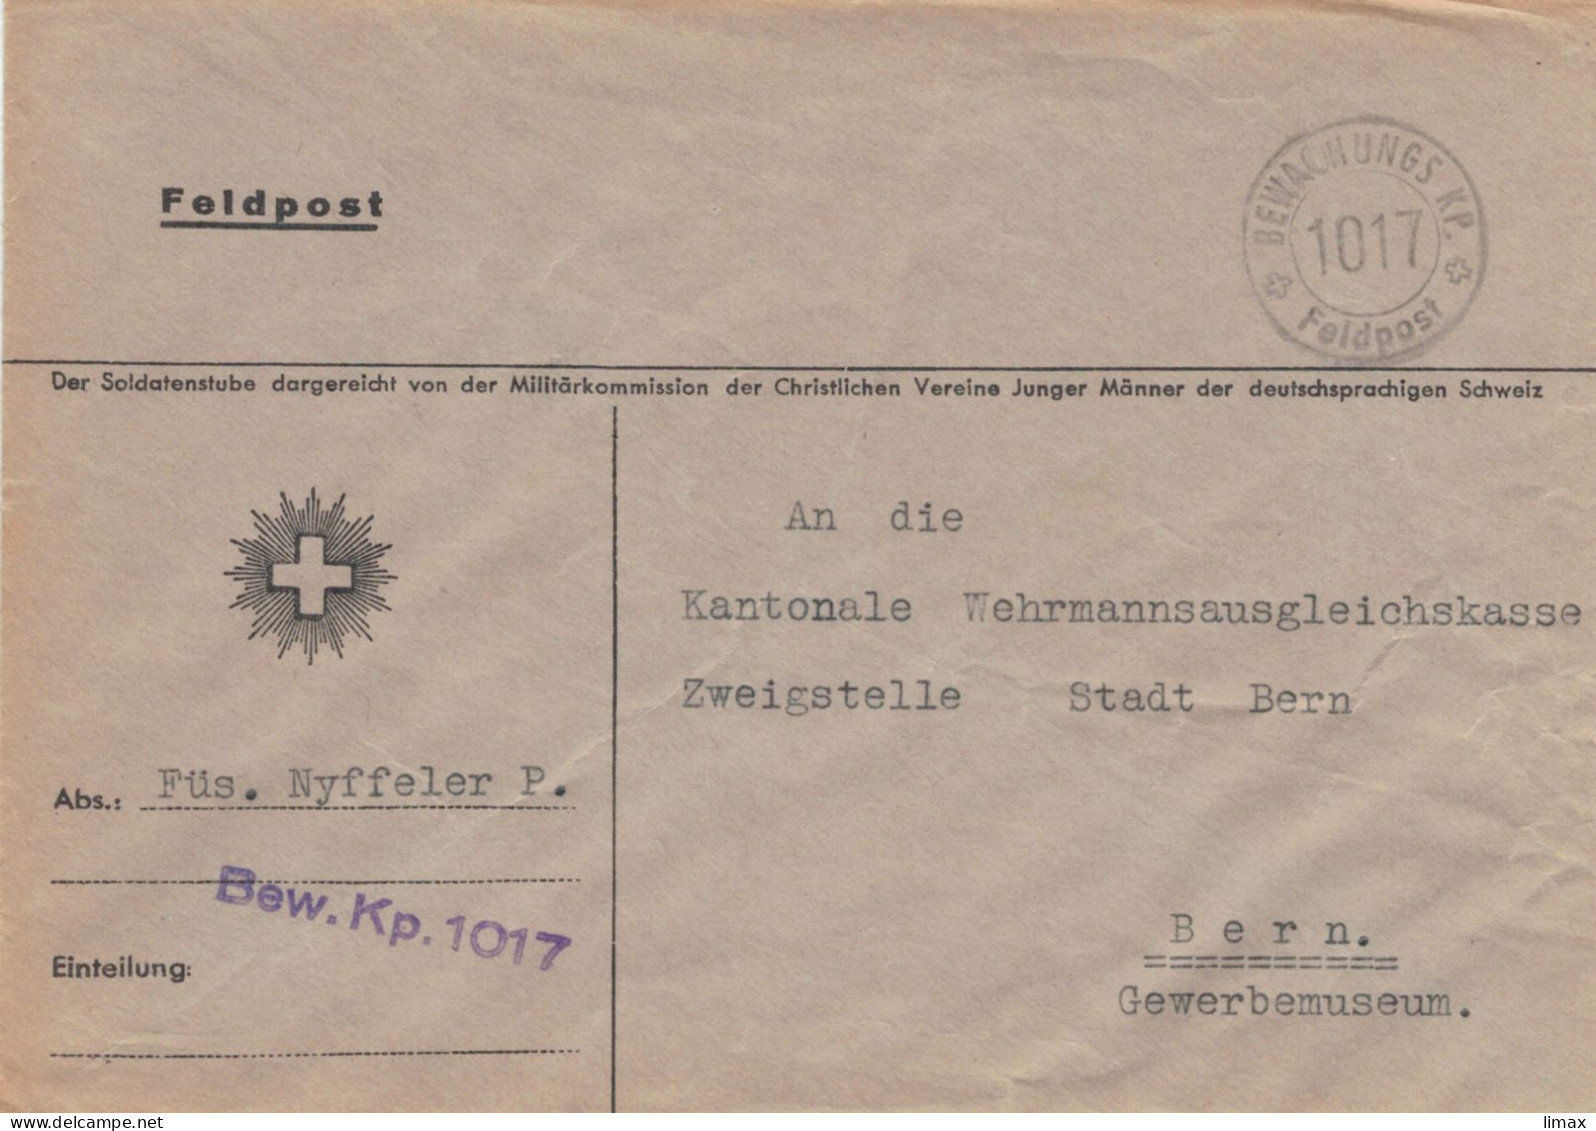 Feldpost Füsilier Nyffeler P. Bewachungskompanie 1017 > Kantonale Wehrmannsausgleichkasse Bern - Dienstzegels